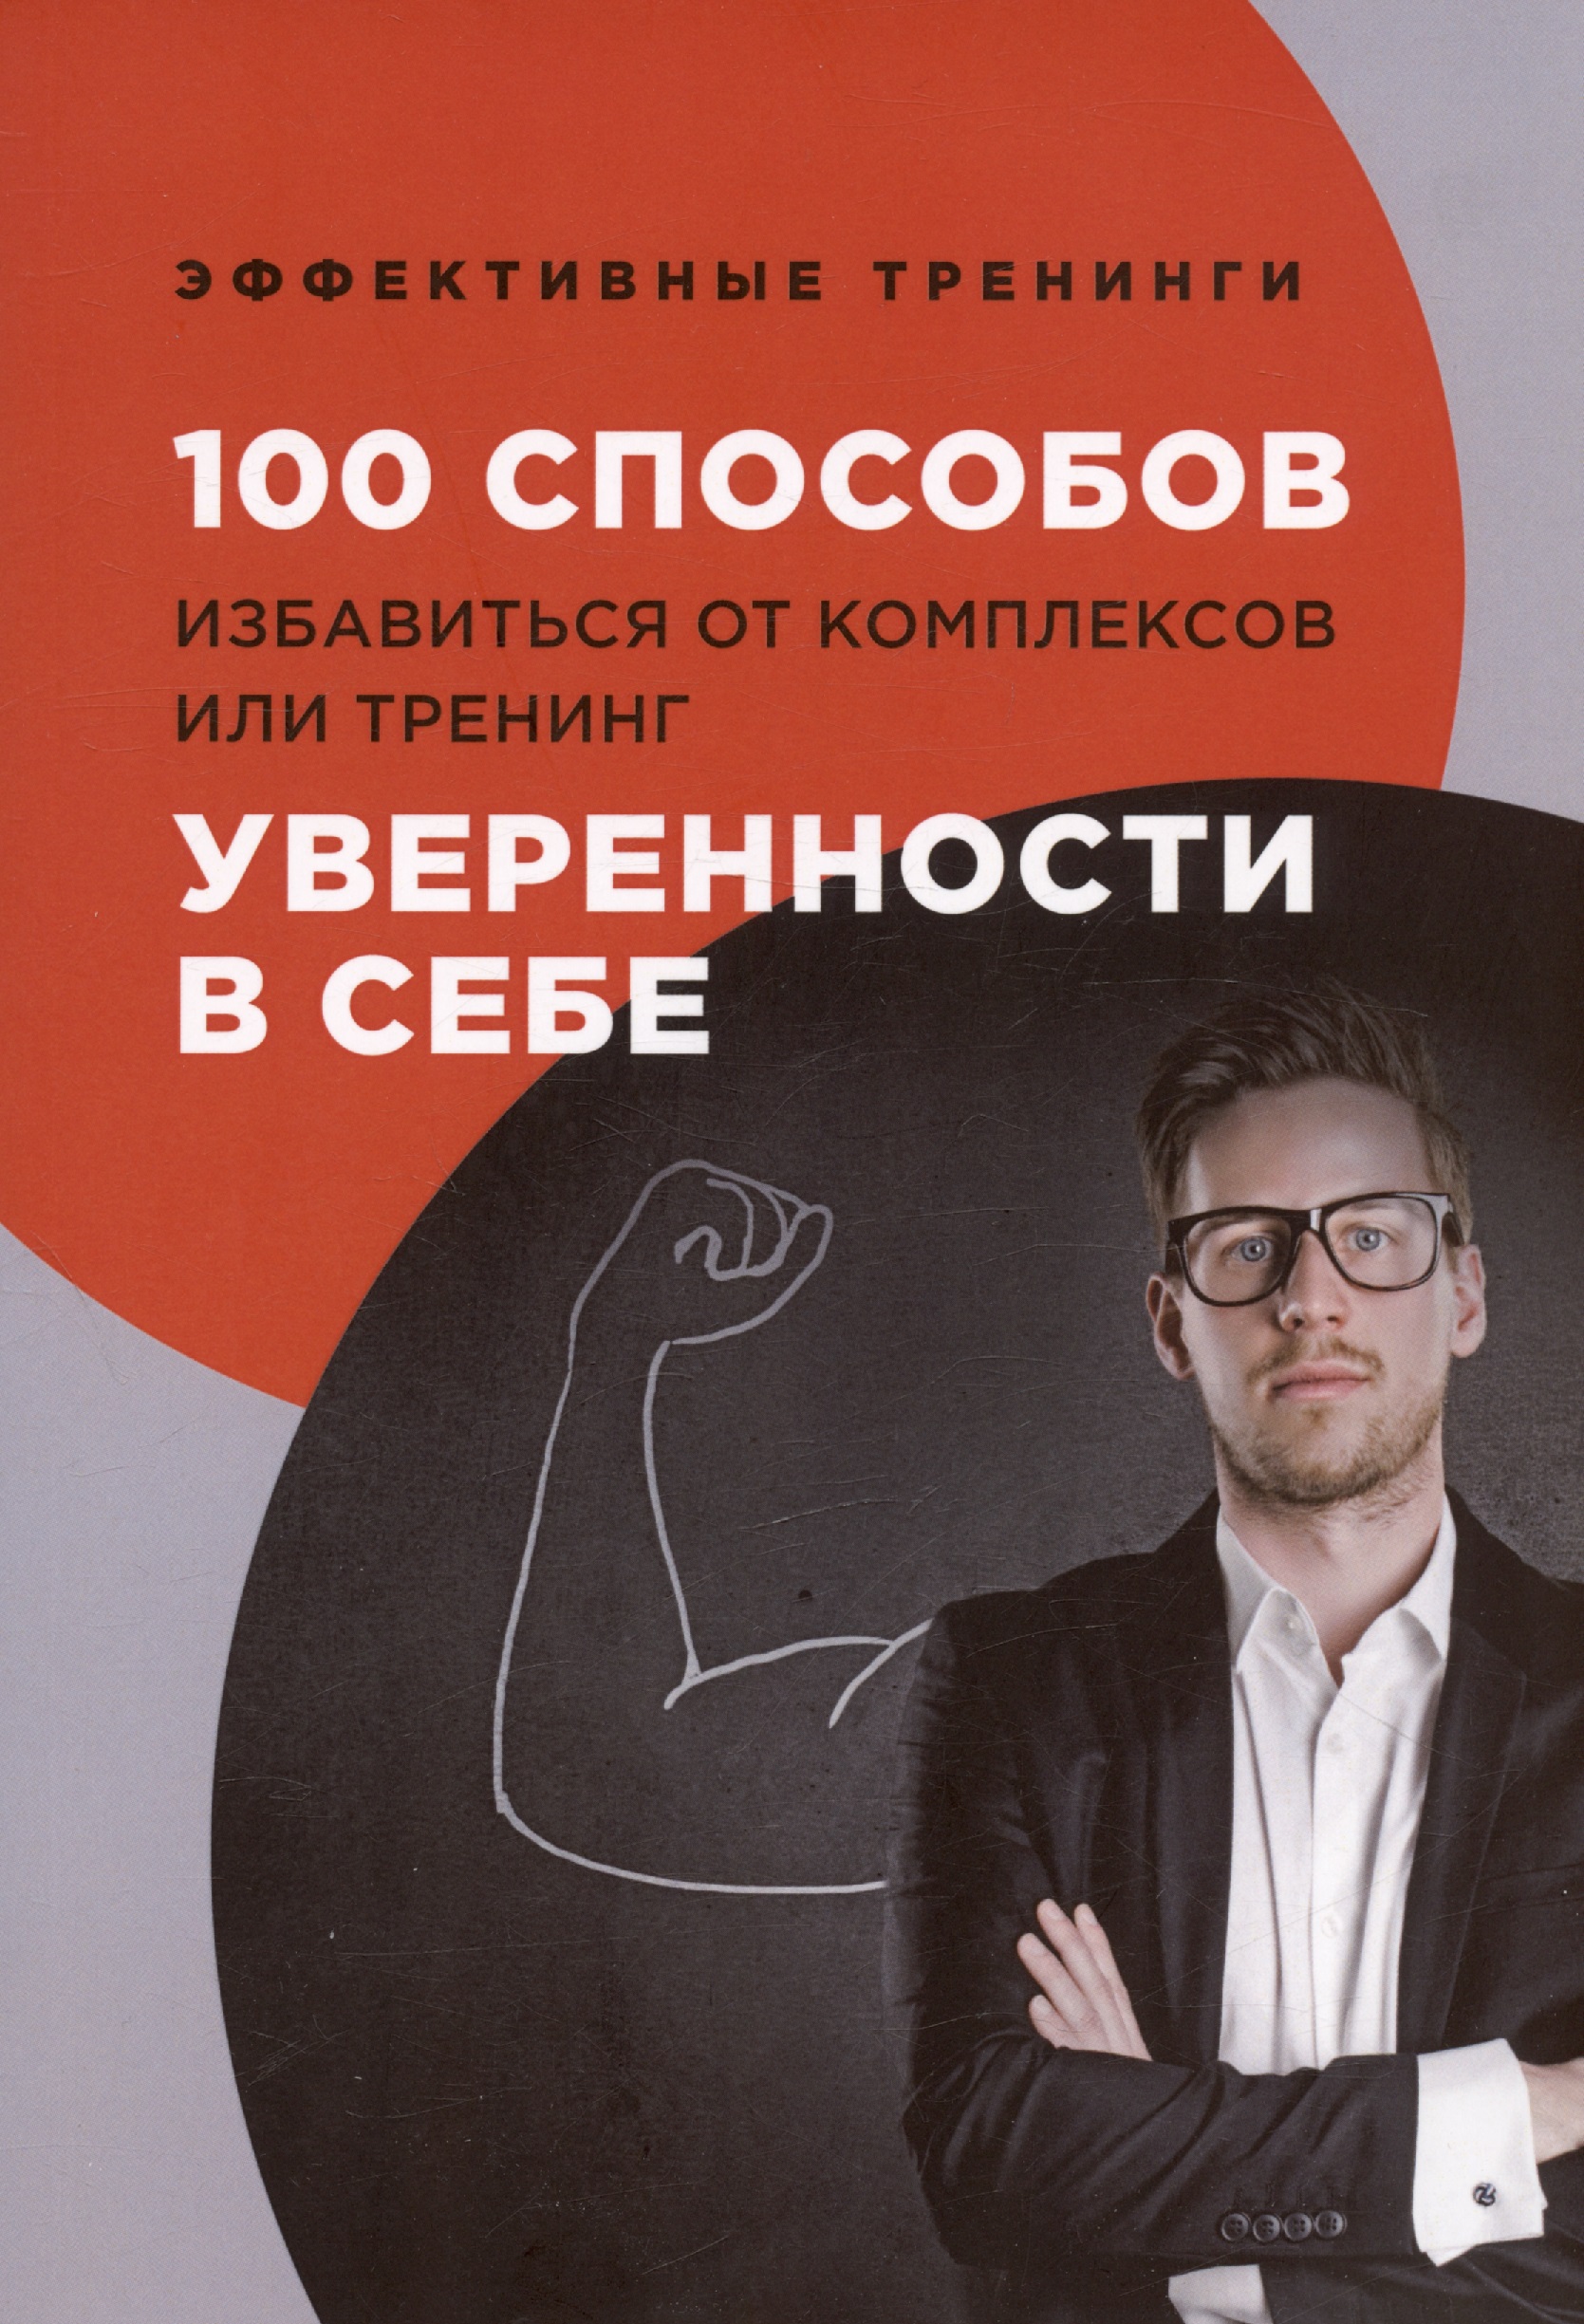 Черниговцев Глеб Иванович 100 способов избавиться от комплексов или тренинг уверенности в себе